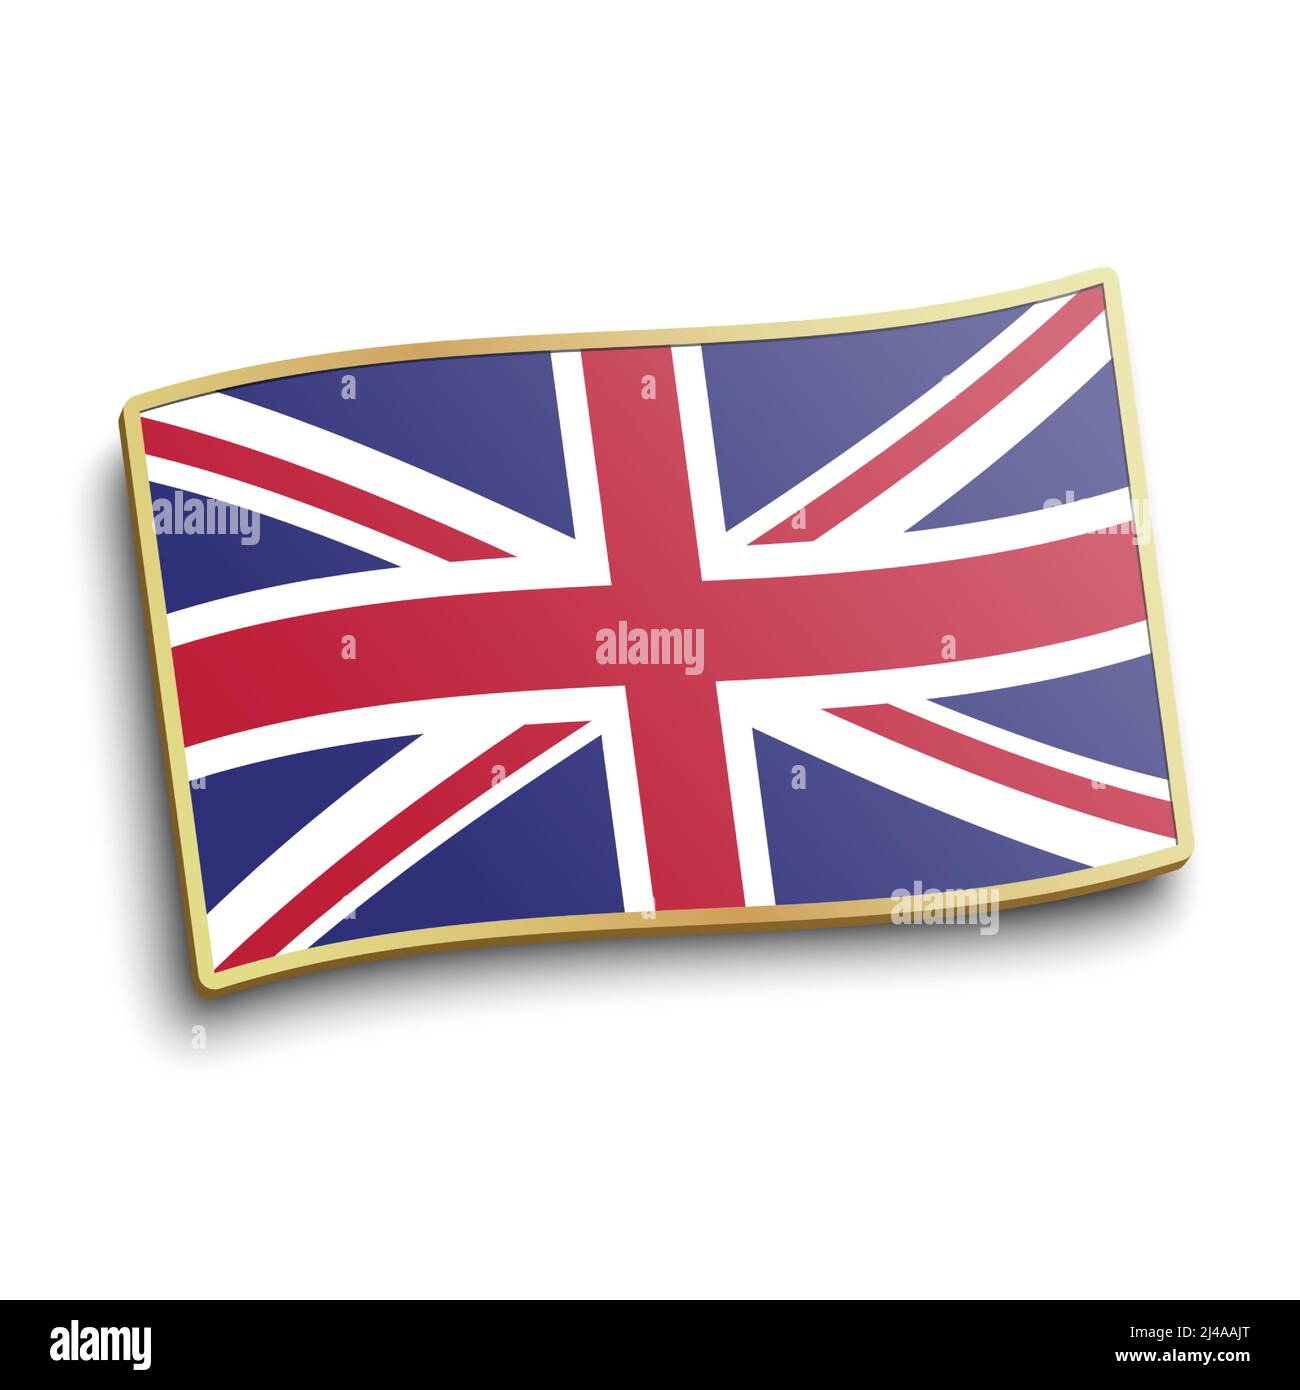 Épinglette dorée drapeau britannique isolée sur fond blanc. Illustration vectorielle du badge drapeau de la Grande-Bretagne. Illustration de Vecteur